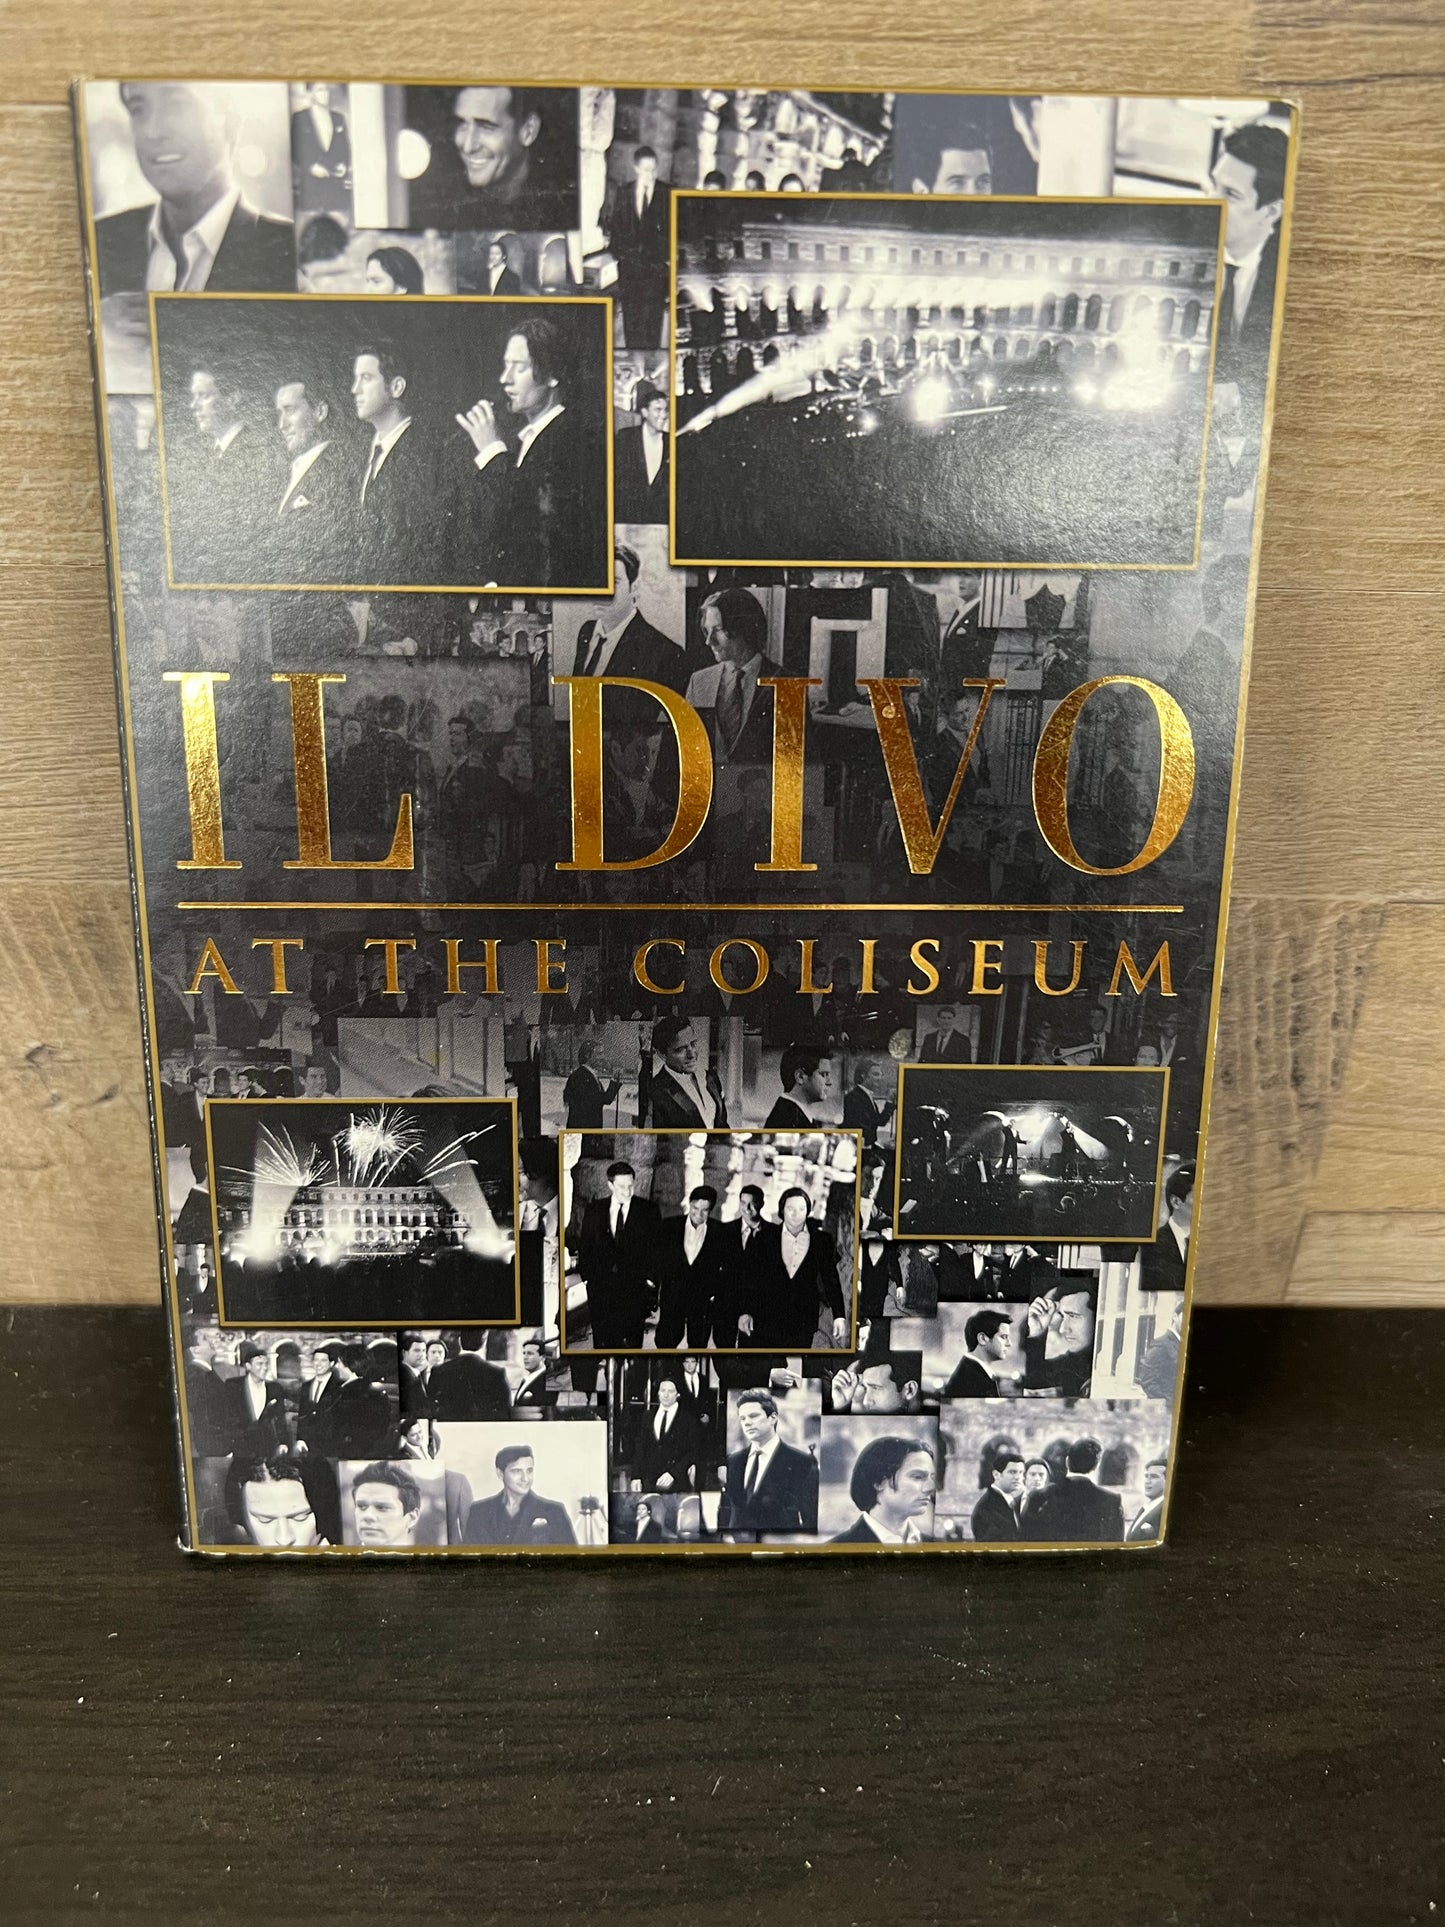 Il Divo at the Coliseum 1951